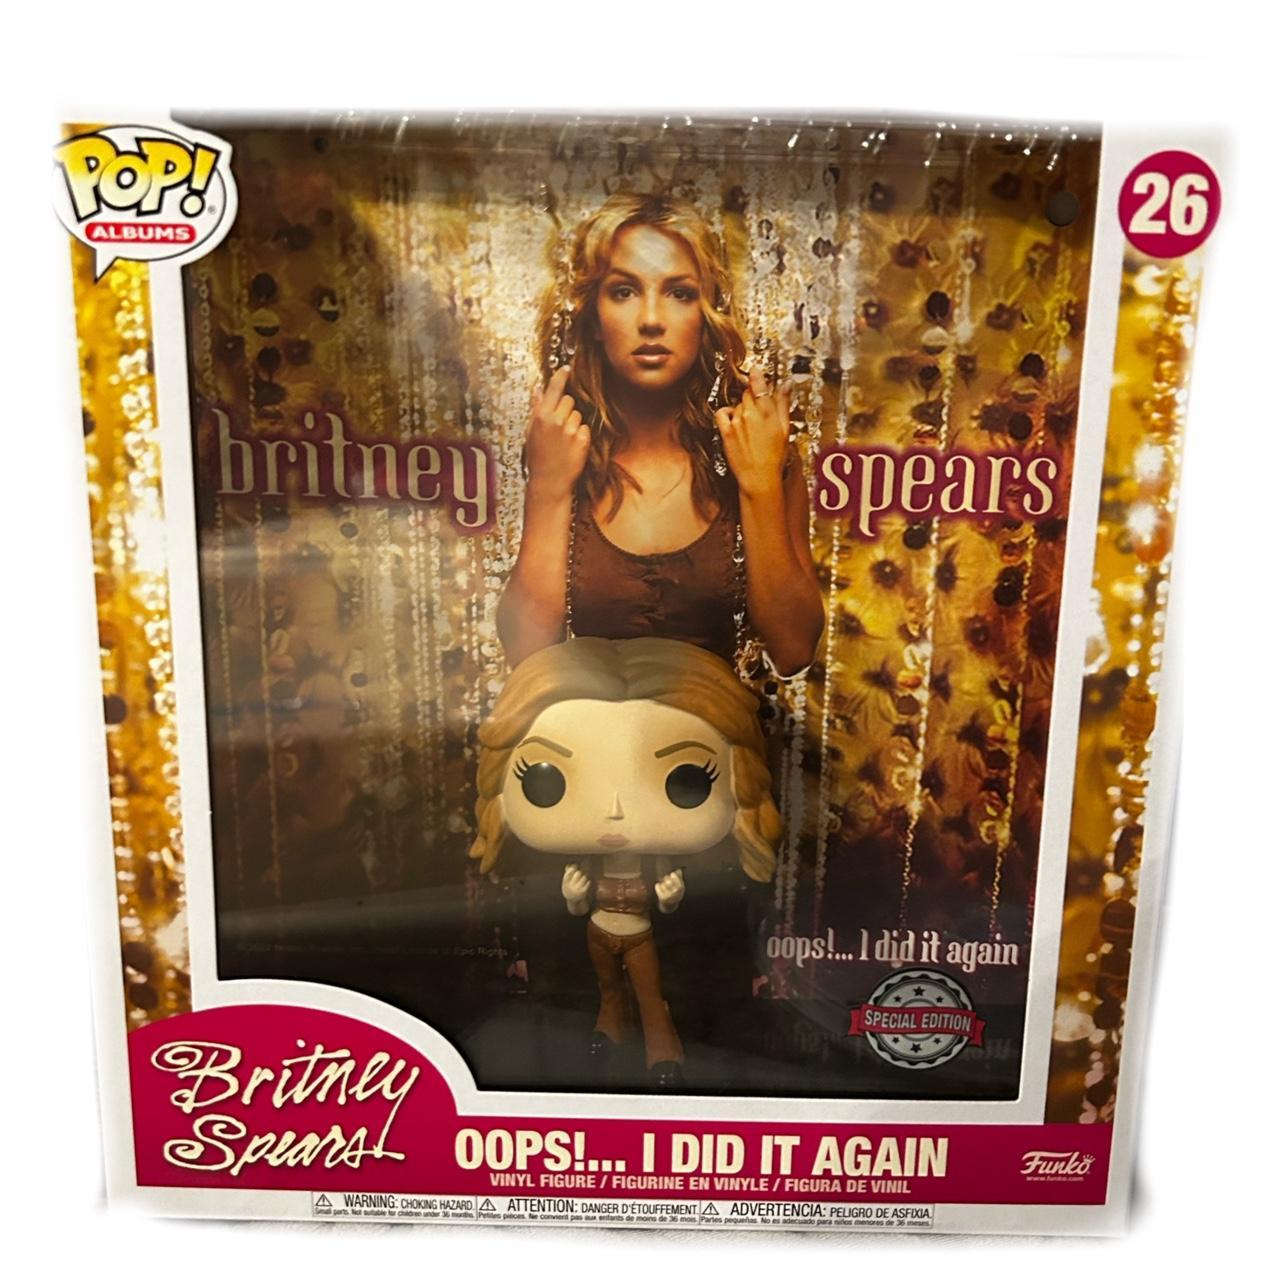 Funko Pop! Albums: Britney Spears - Oops! I Did It Again Vinyl